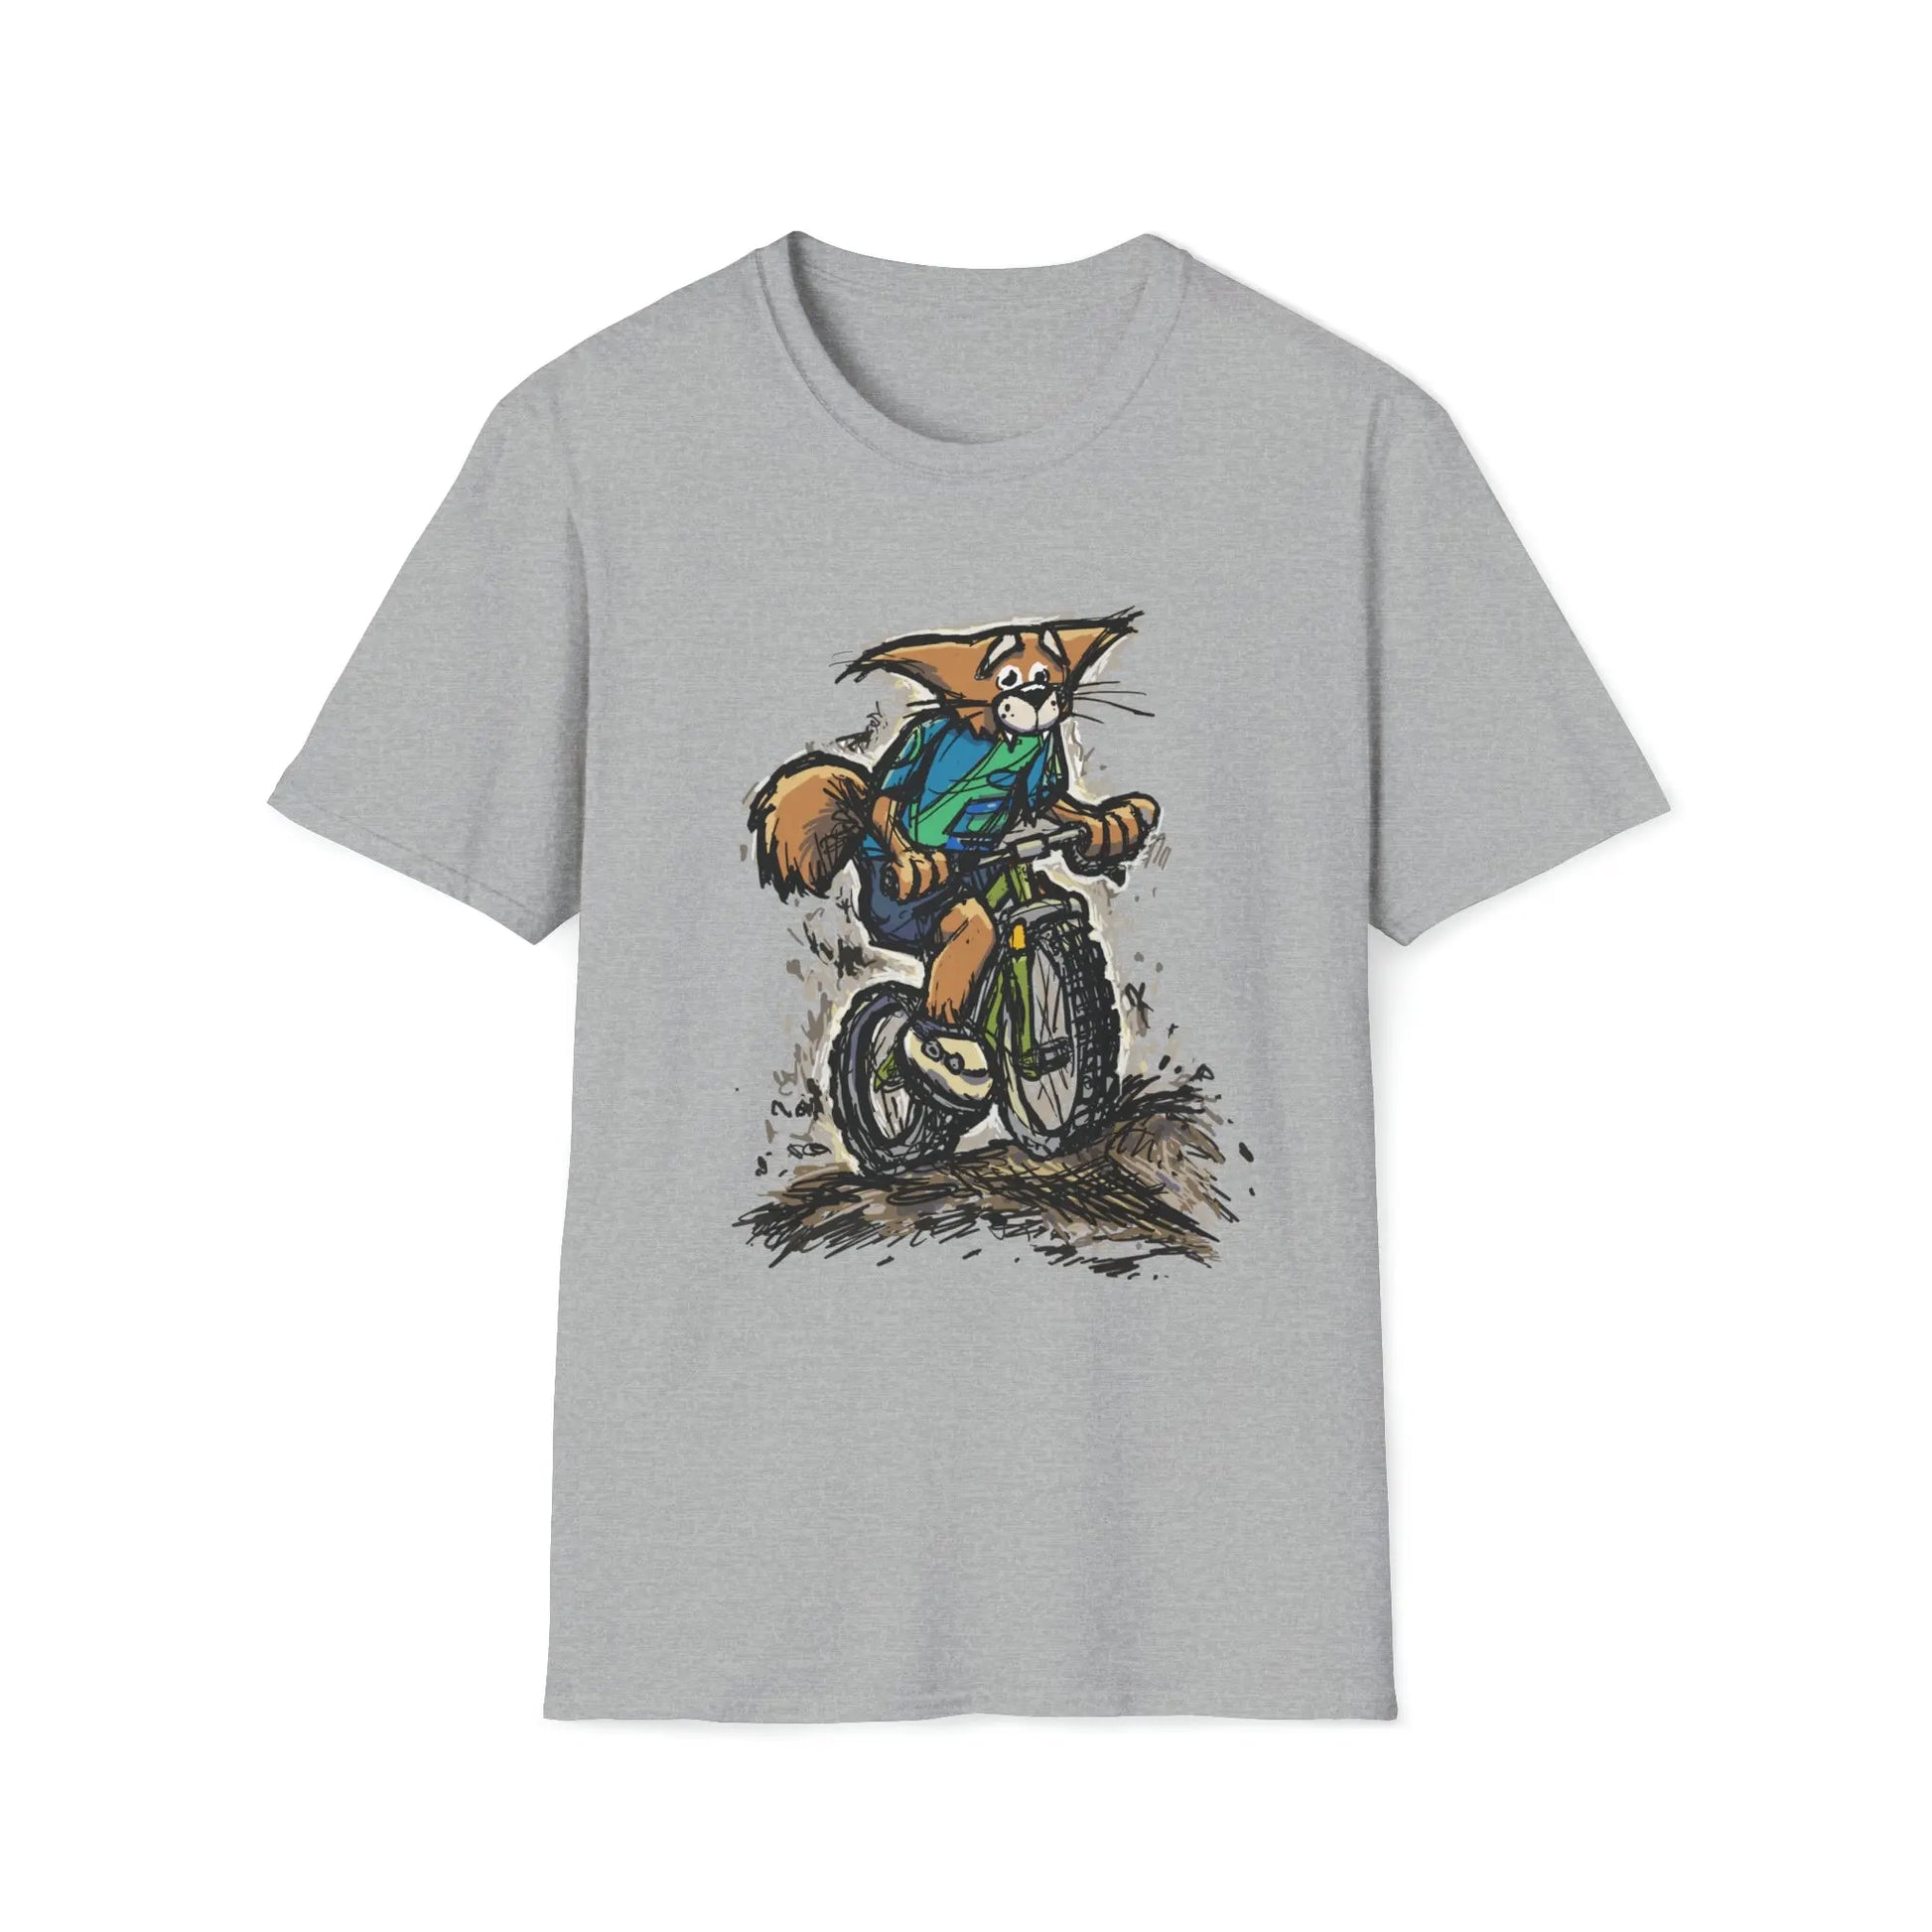 A Fox Racing on a Mountain Bike - Mountain Bike T-Shirt